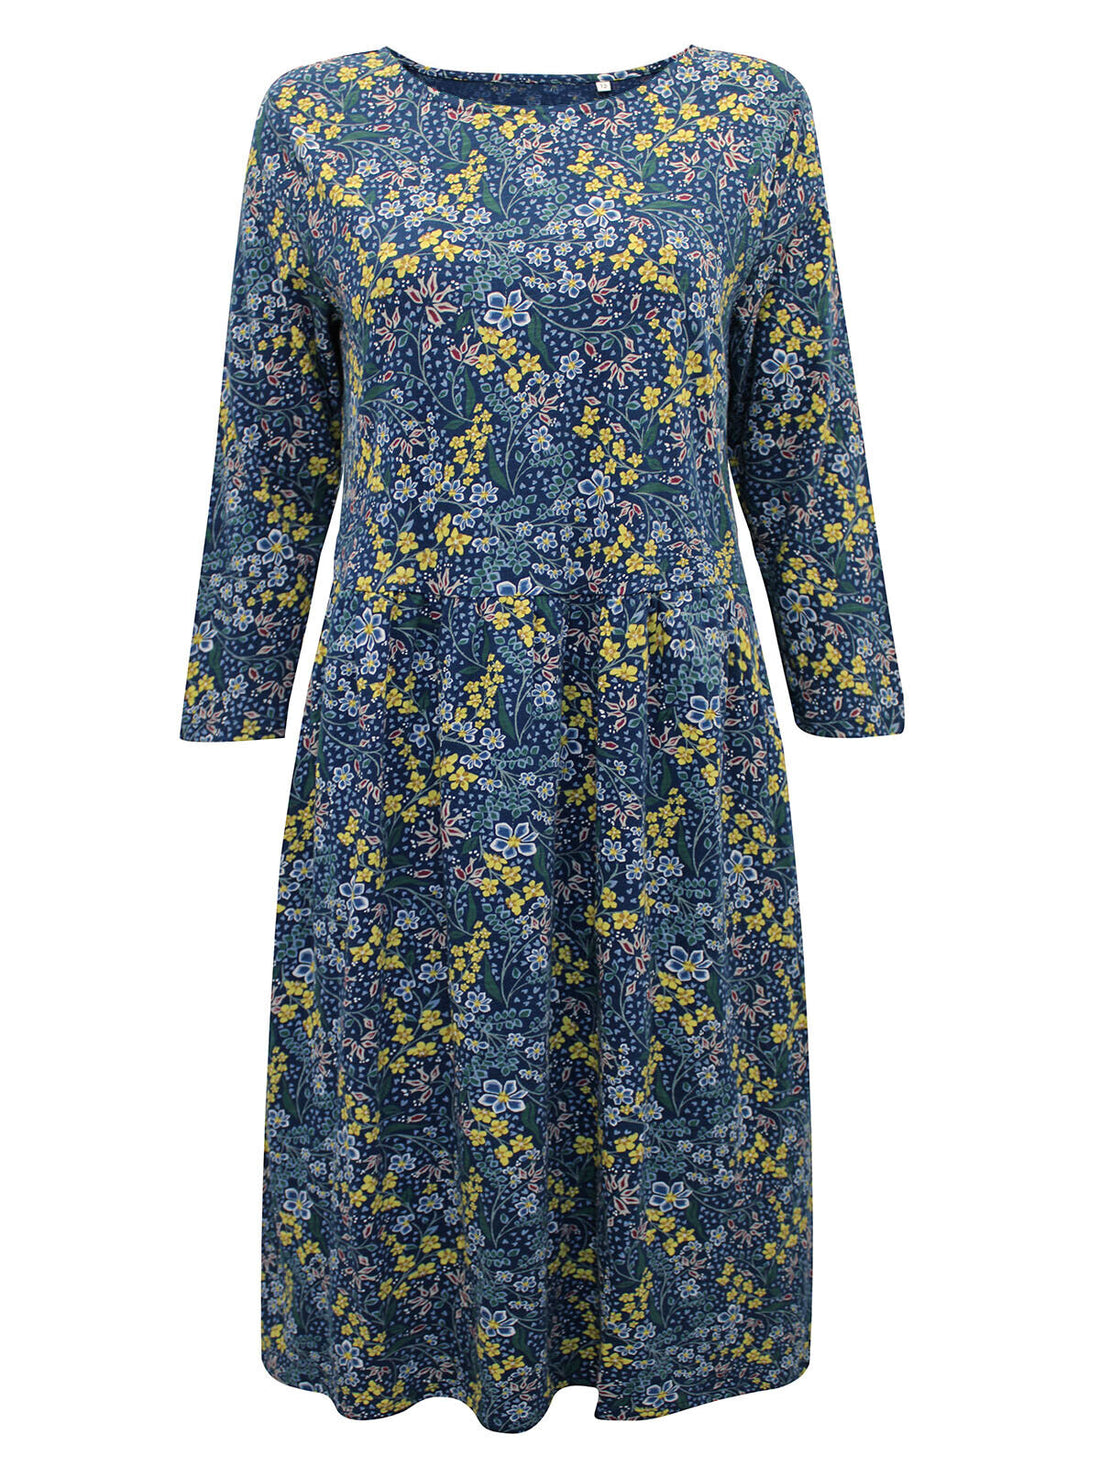 EX Seasalt Blue Garden Medley Raincloud Guelder Rose Dress Sizes 10-20 RRP£59.95